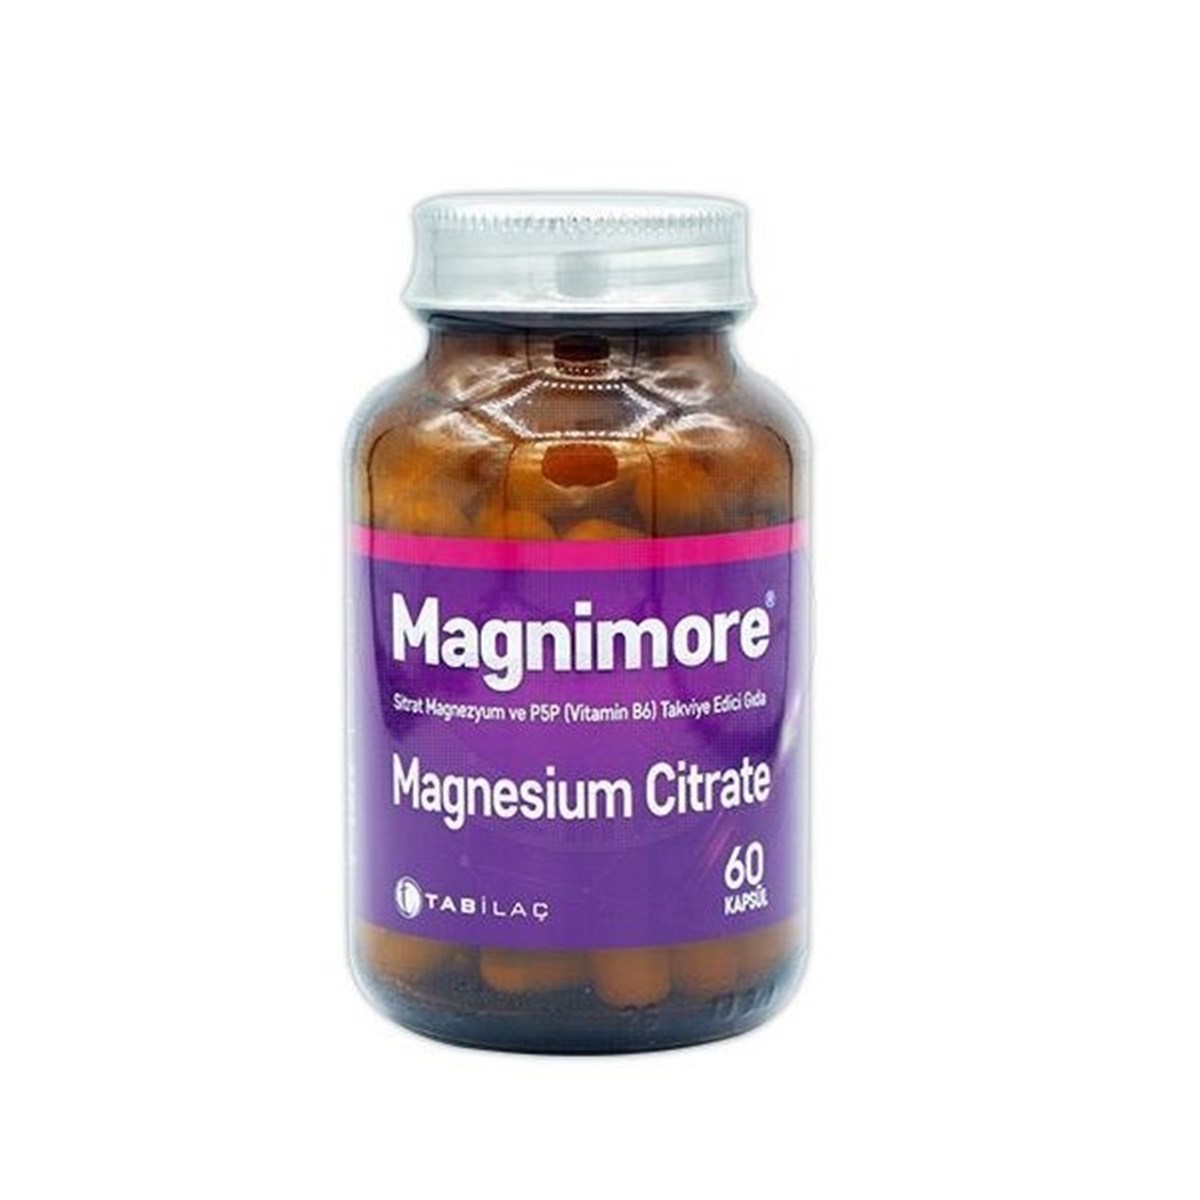 Magnimore Magnesium Citrate 60 Kapsül | ozekpharma.com